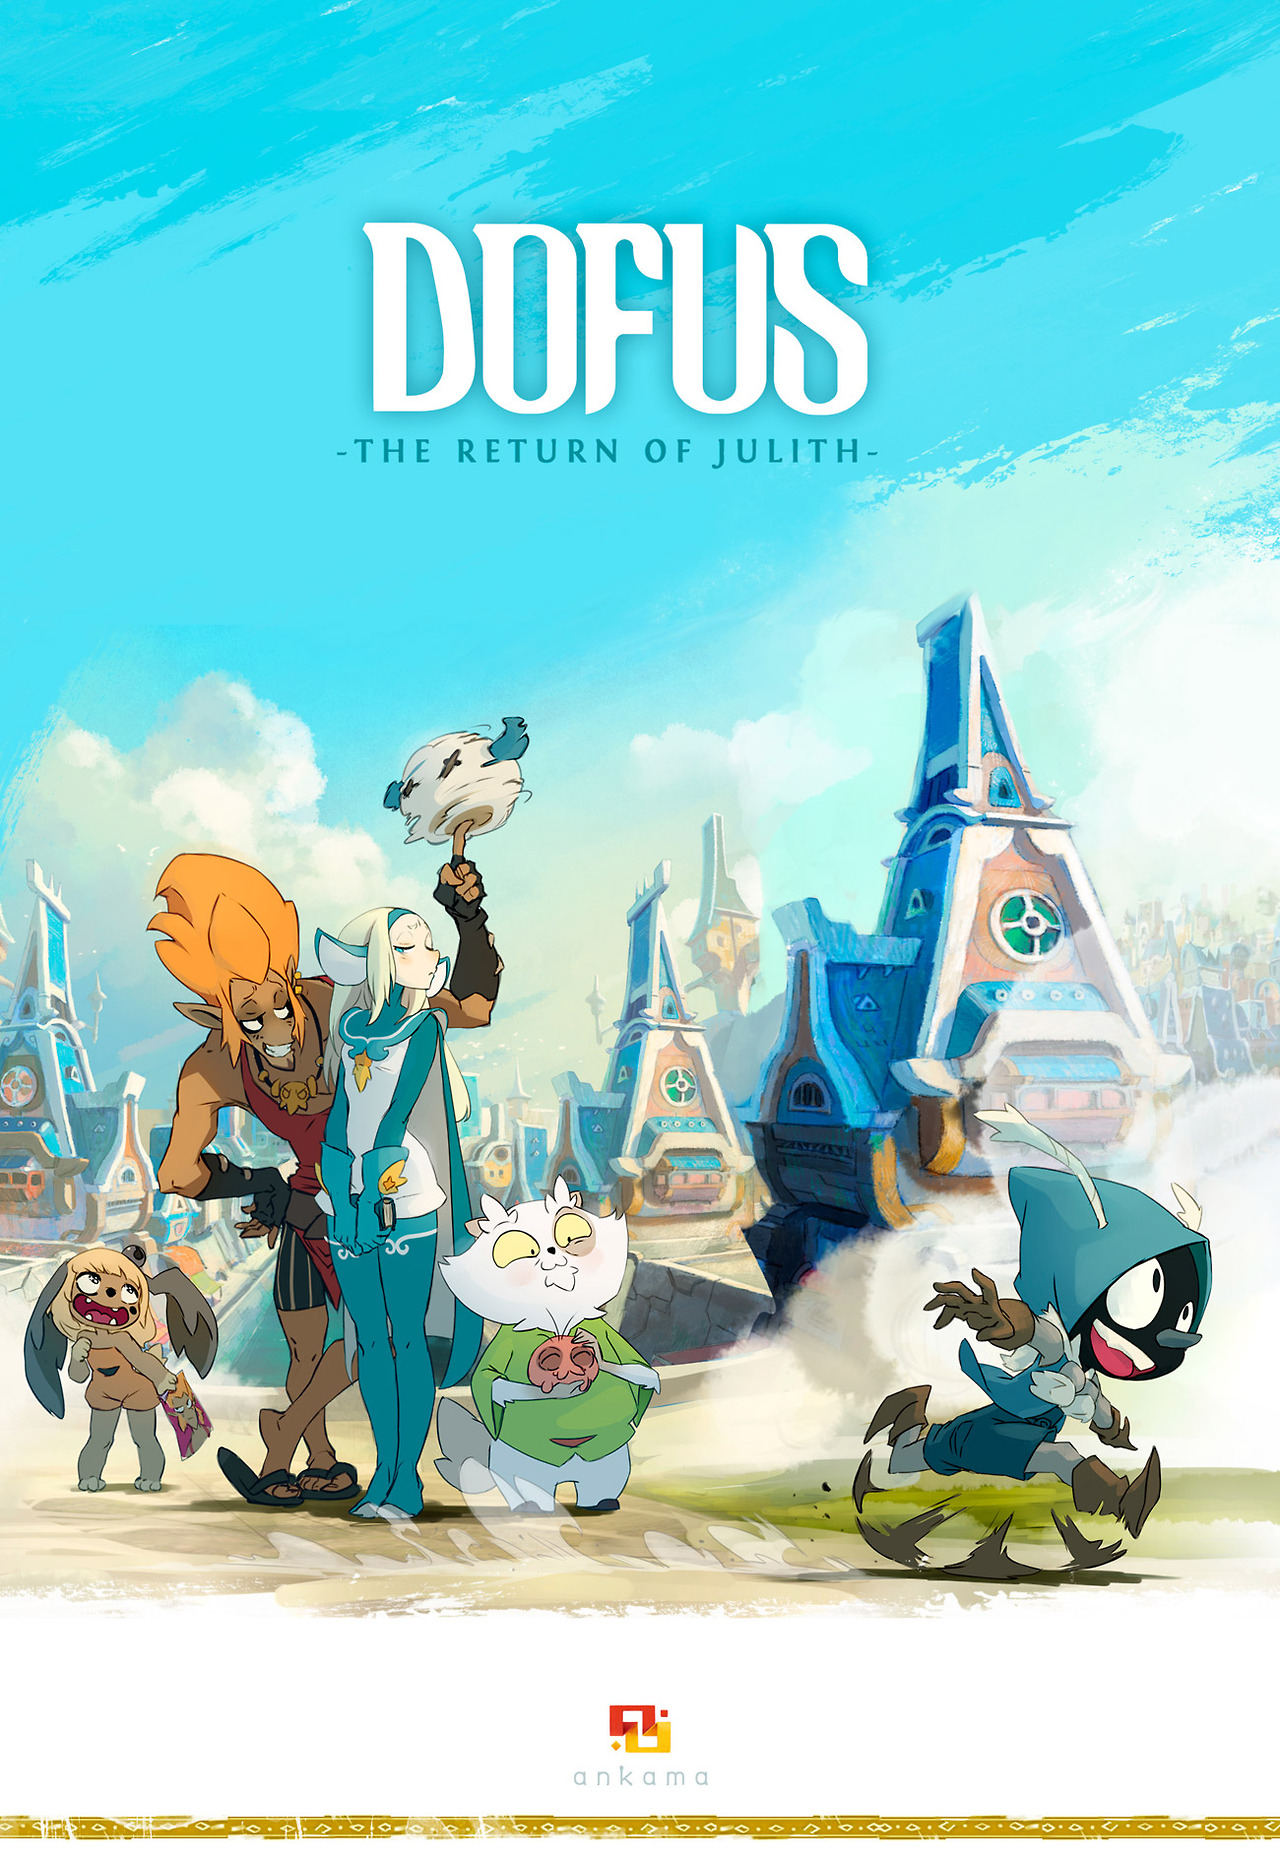 dofus book 1 julith english sub full movie